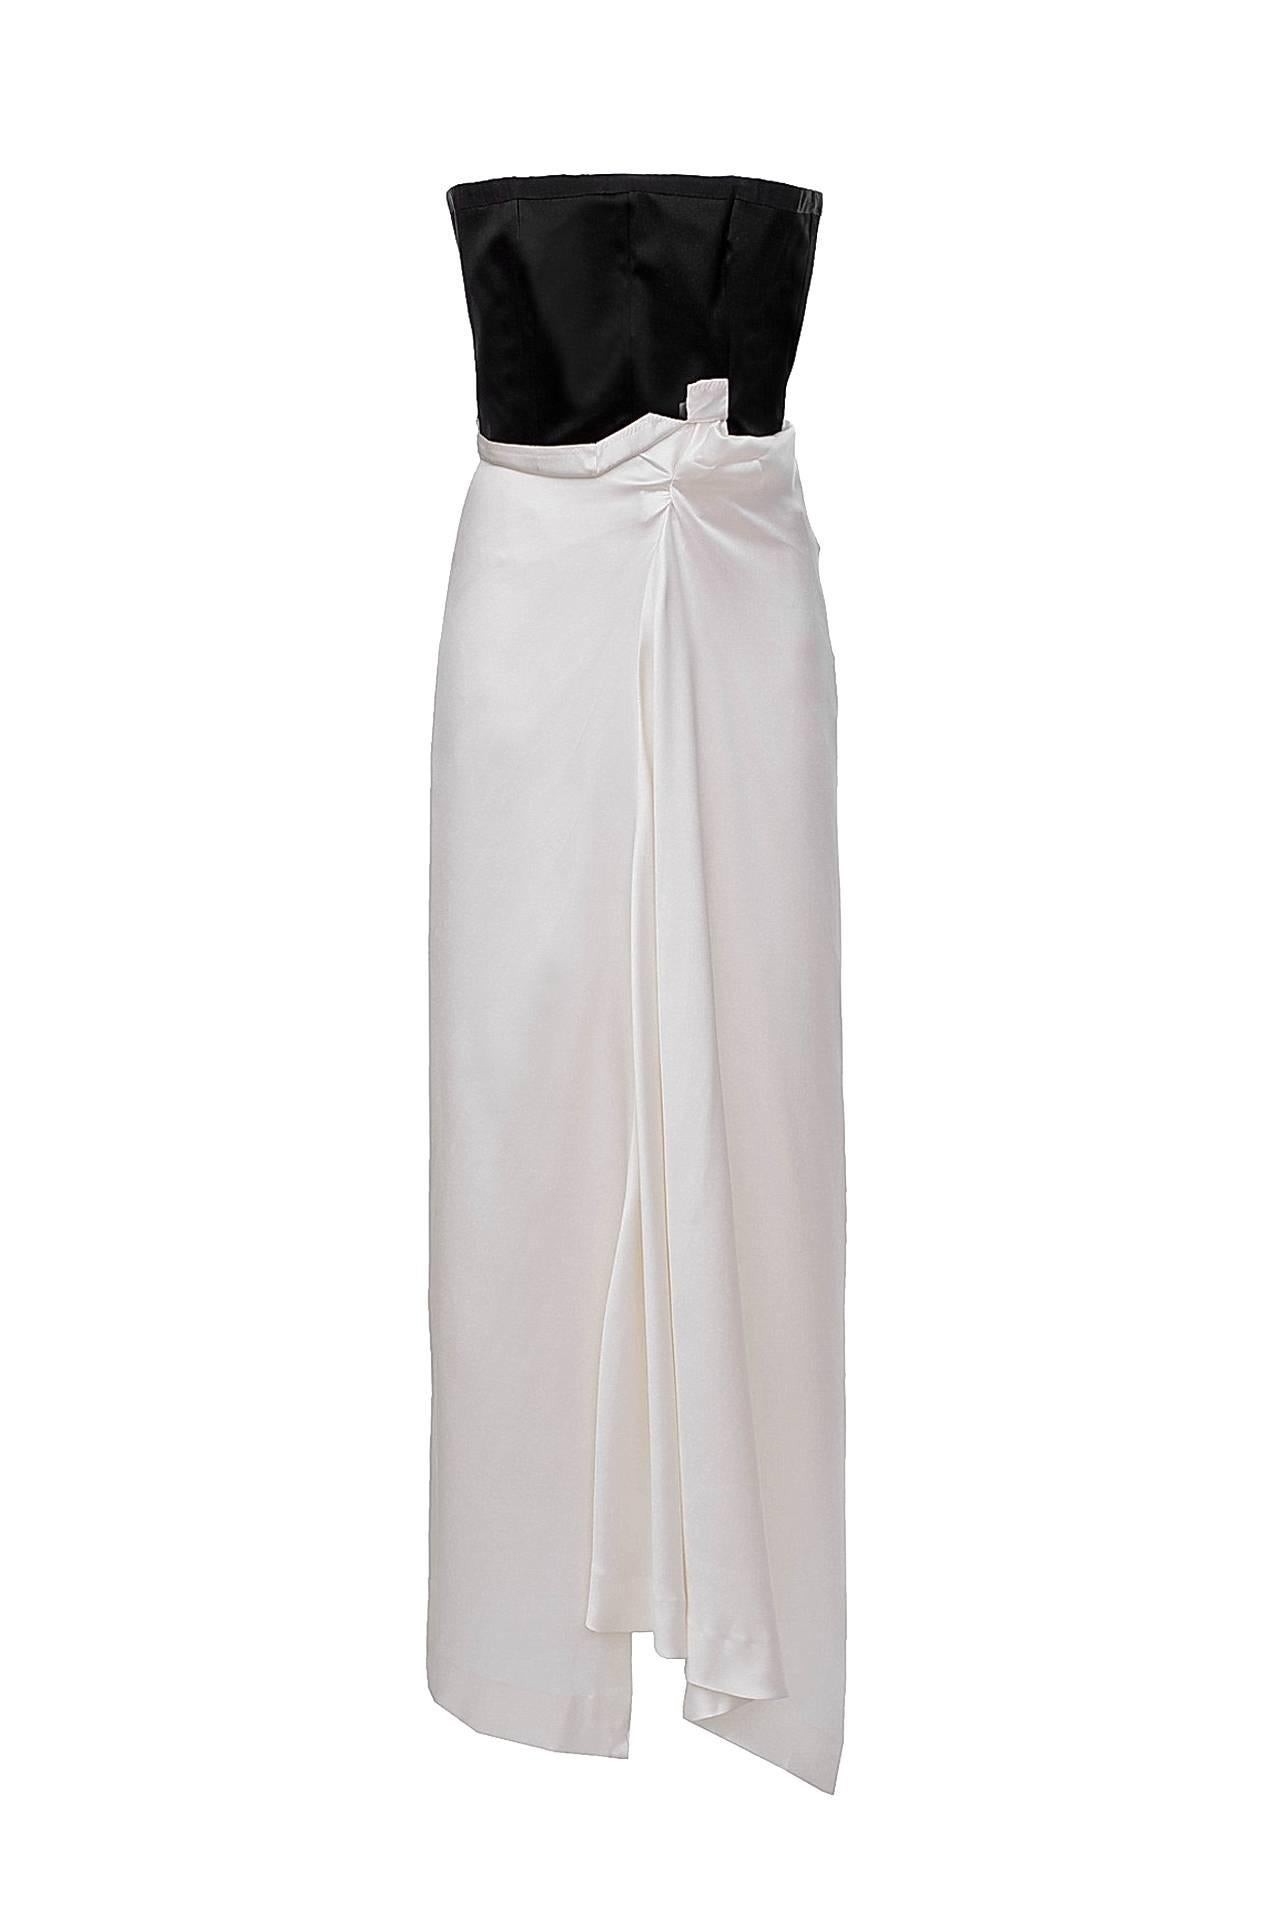 Vintage Yves Saint Laurent Evening Gown